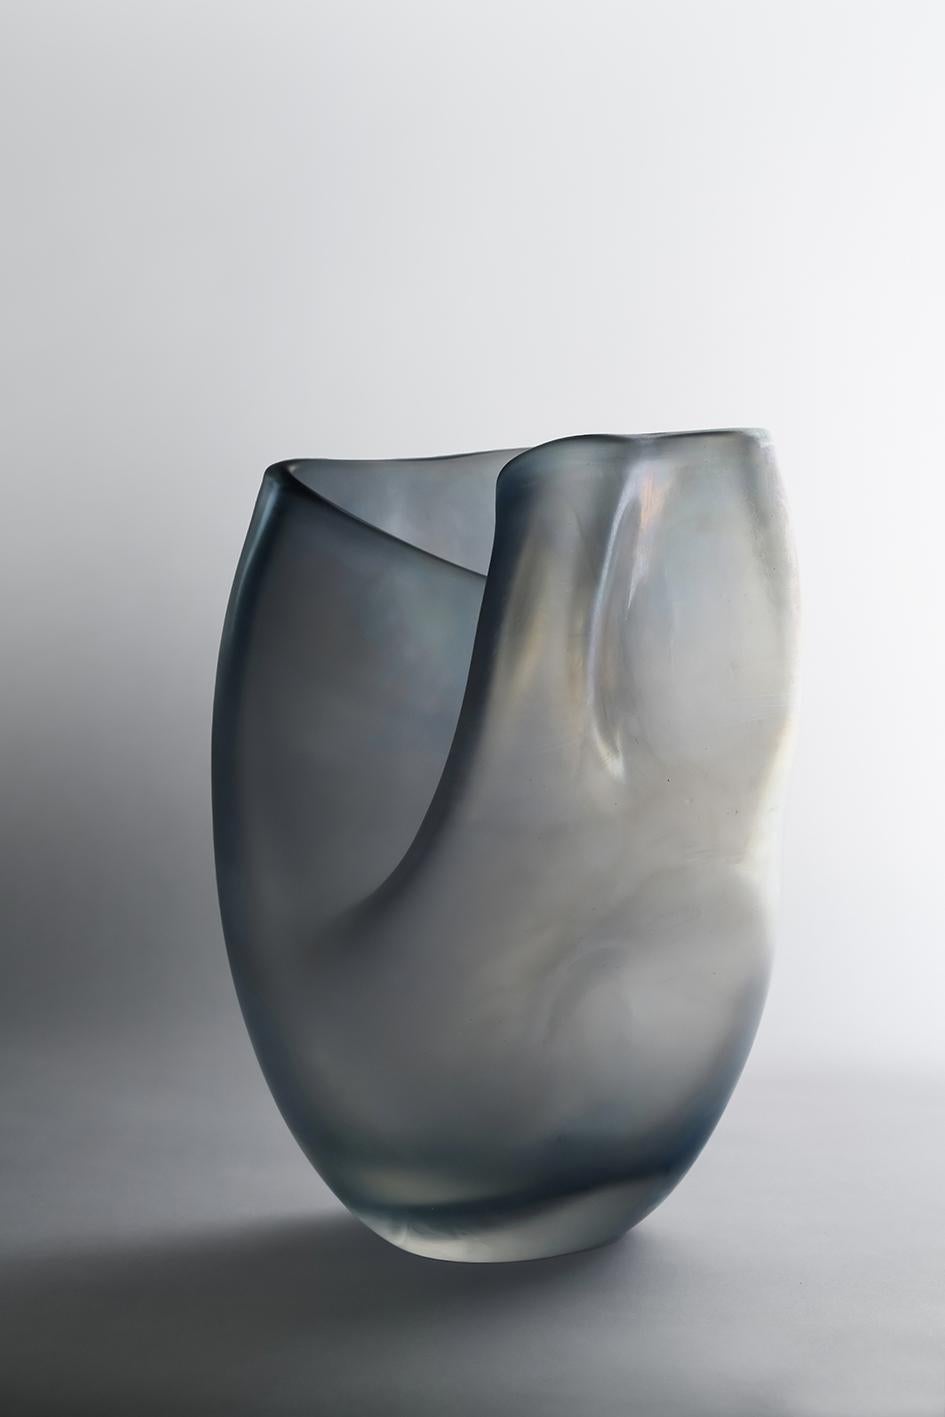 Bacan-Vase von Purho
Abmessungen: T28 x H40 cm
MATERIALIEN: Muranoglas
Erhältlich in anderen Farben.

Bacan ist eine Vase aus der Laguna Collection, entworfen von Ludovica+Roberto Palomba für Purho im Frühjahr 2022.
Bacan - der Name bezieht sich auf